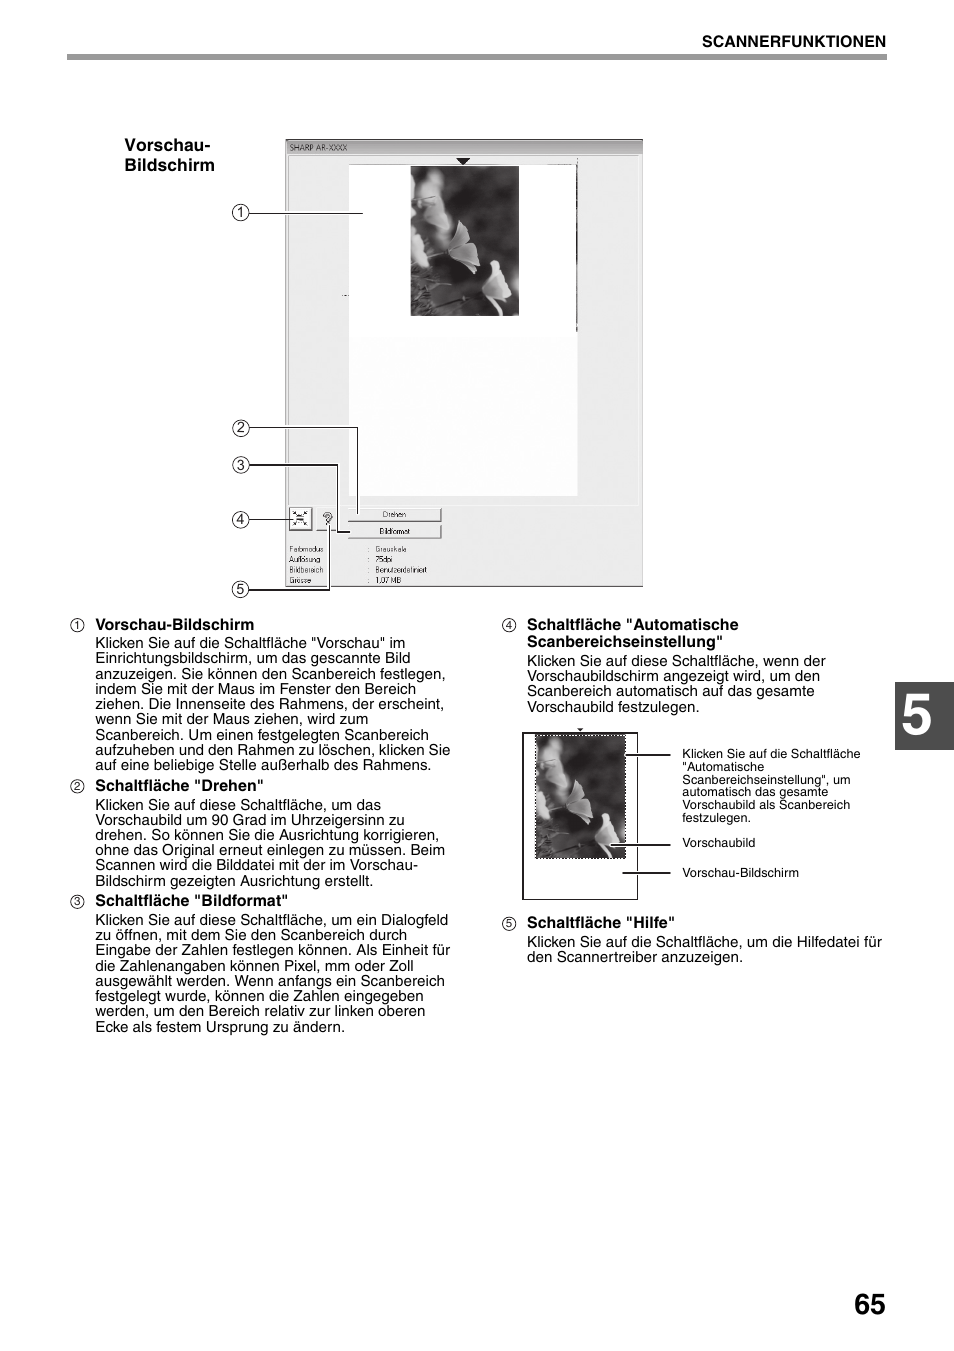 Vorschau-bildschirm" (s.65) | Sharp AR-5618 Benutzerhandbuch | Seite 67 / 108